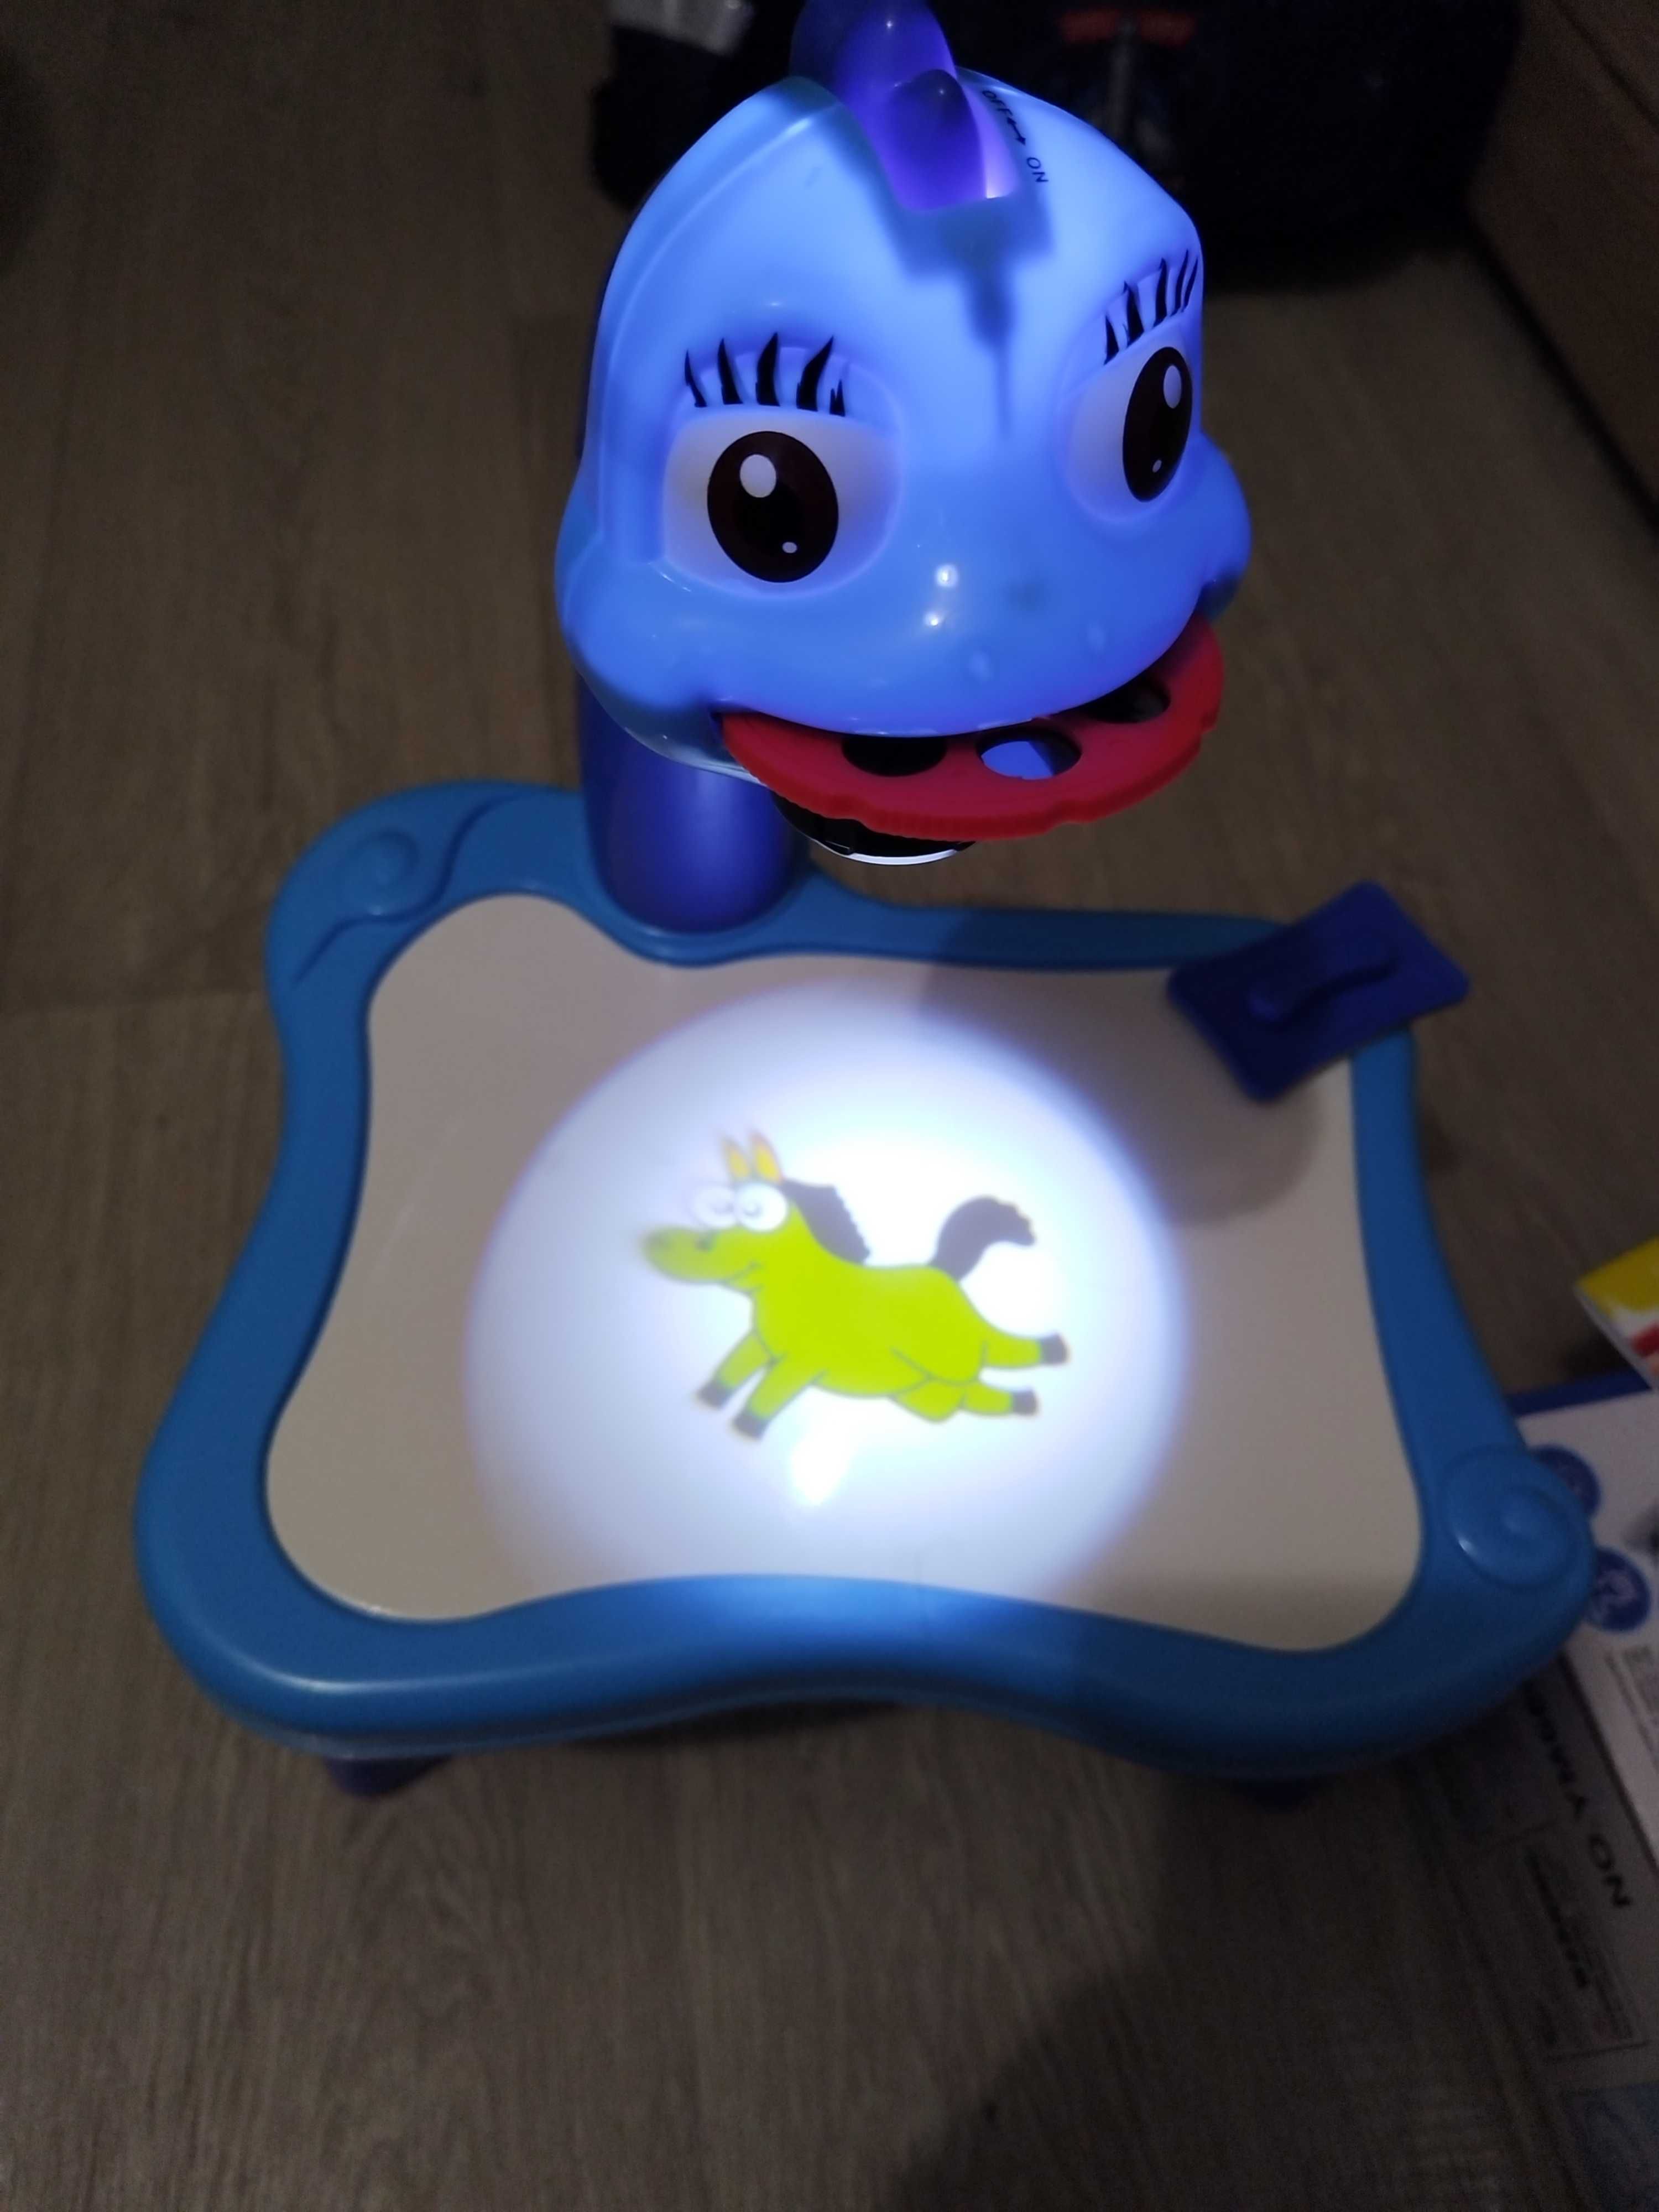 Projektor że stolikiem dla dzieci